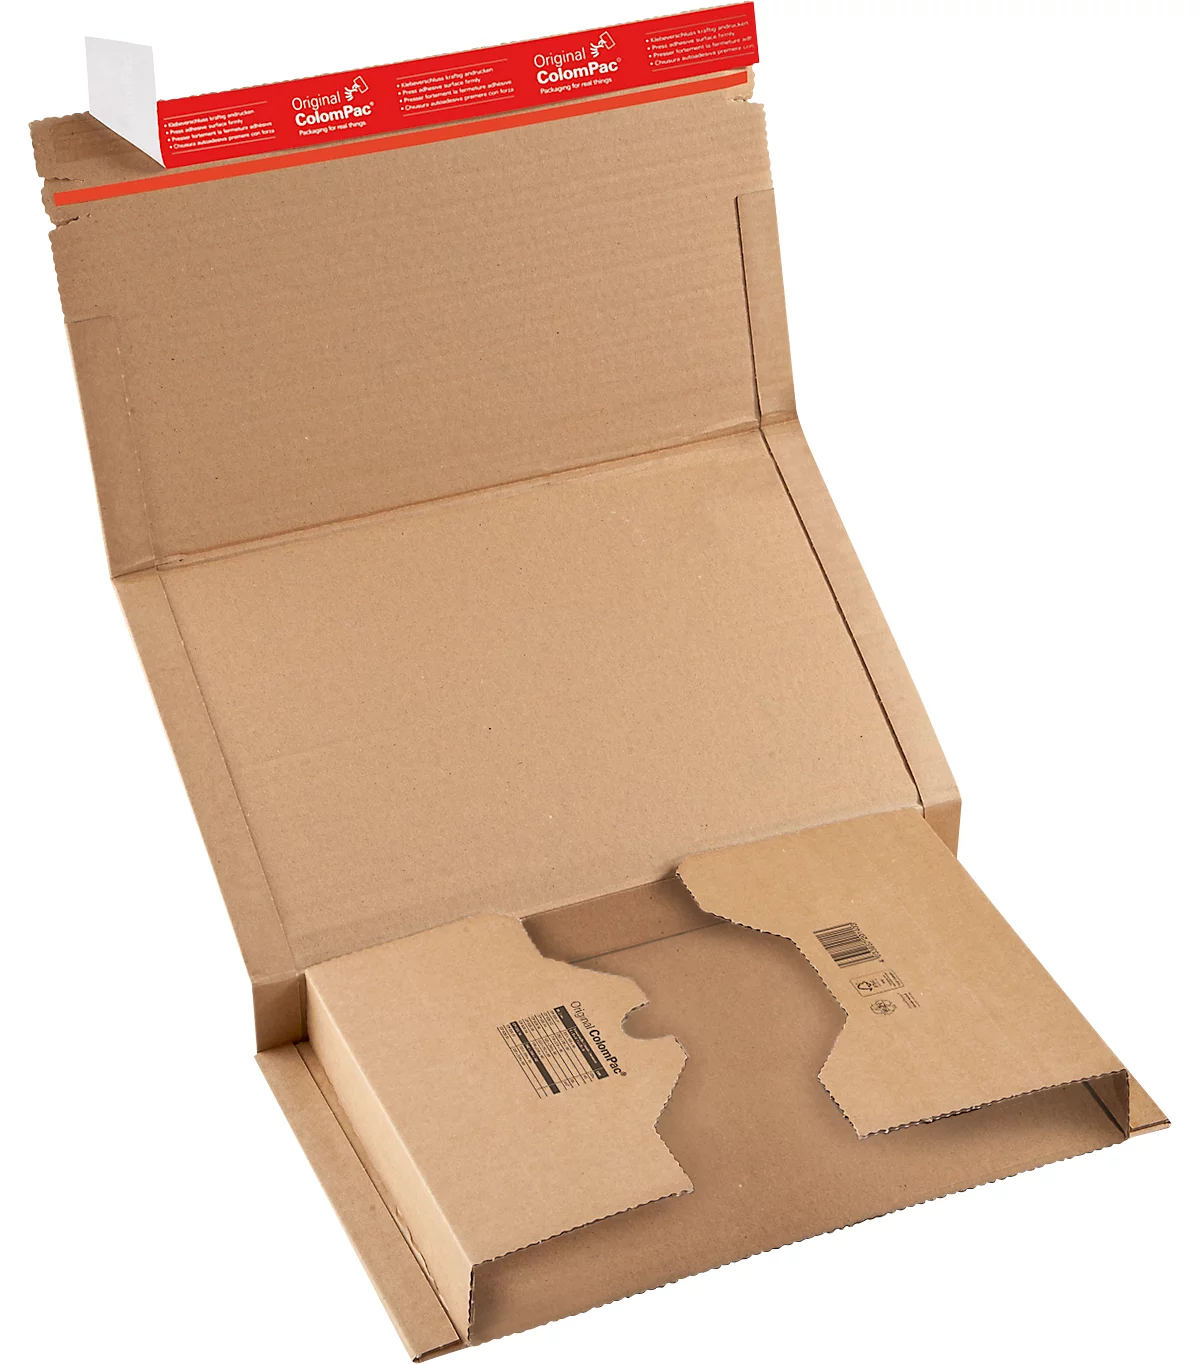 Embalaje envolvente ColomPac CP 020, con precinto autoadhesivo, cartón ondulado, marrón, An 388 x Pr 260 x Al 100 mm (C4+), 20 unid.